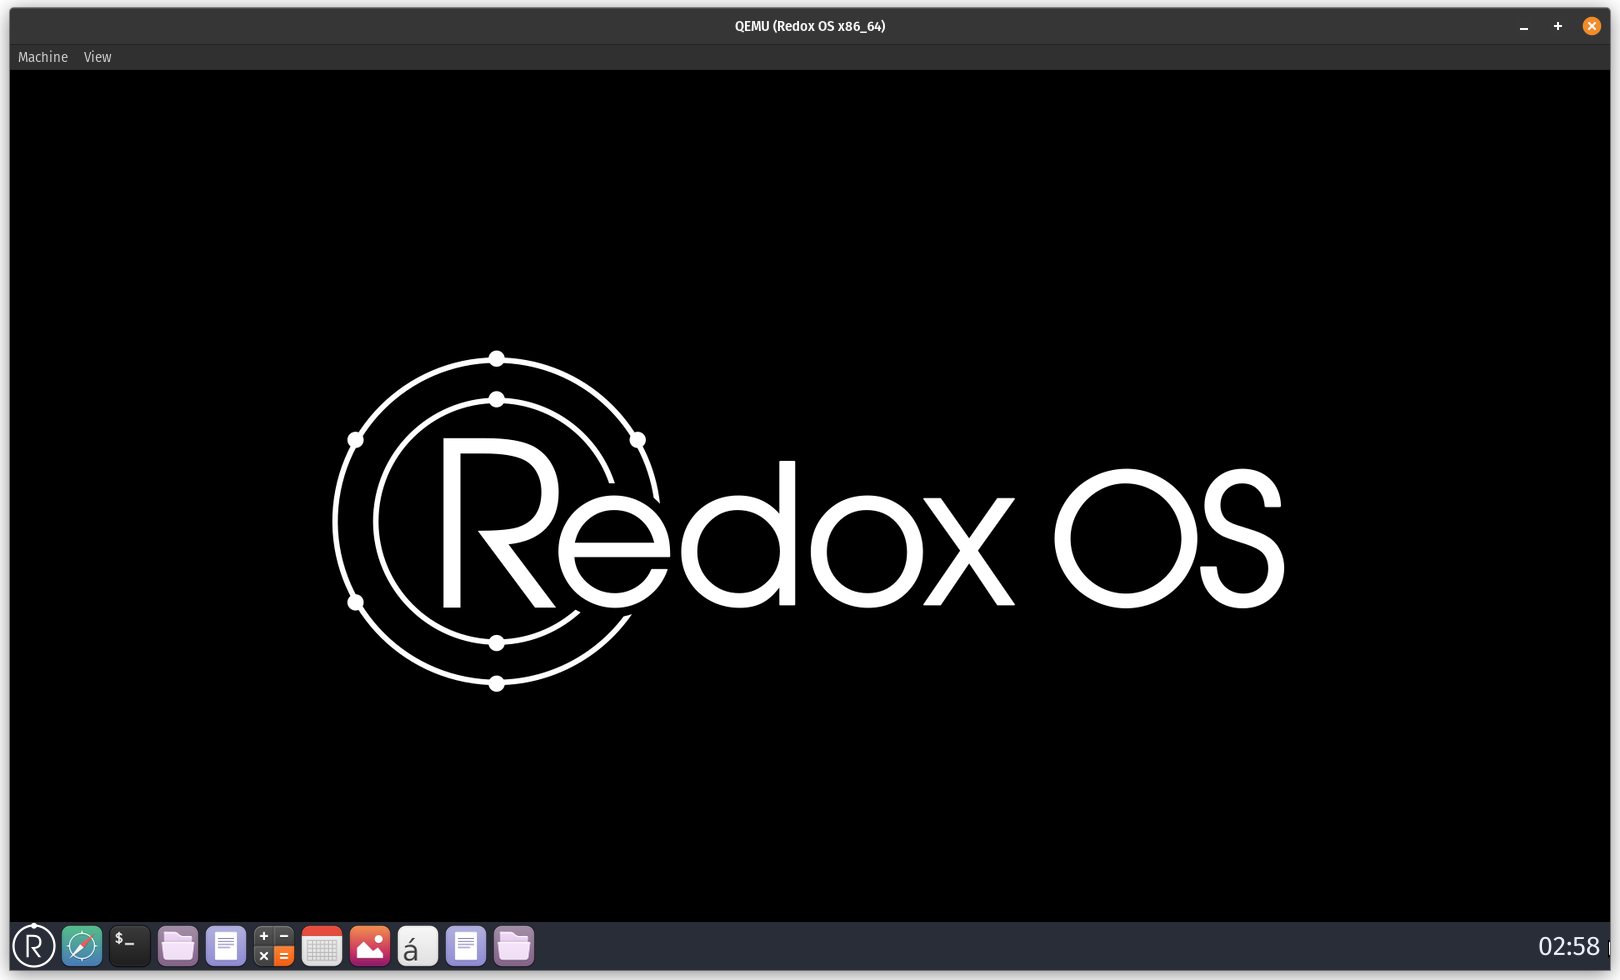 Redox OS traslada más software Linux, incluidas aplicaciones COSMIC